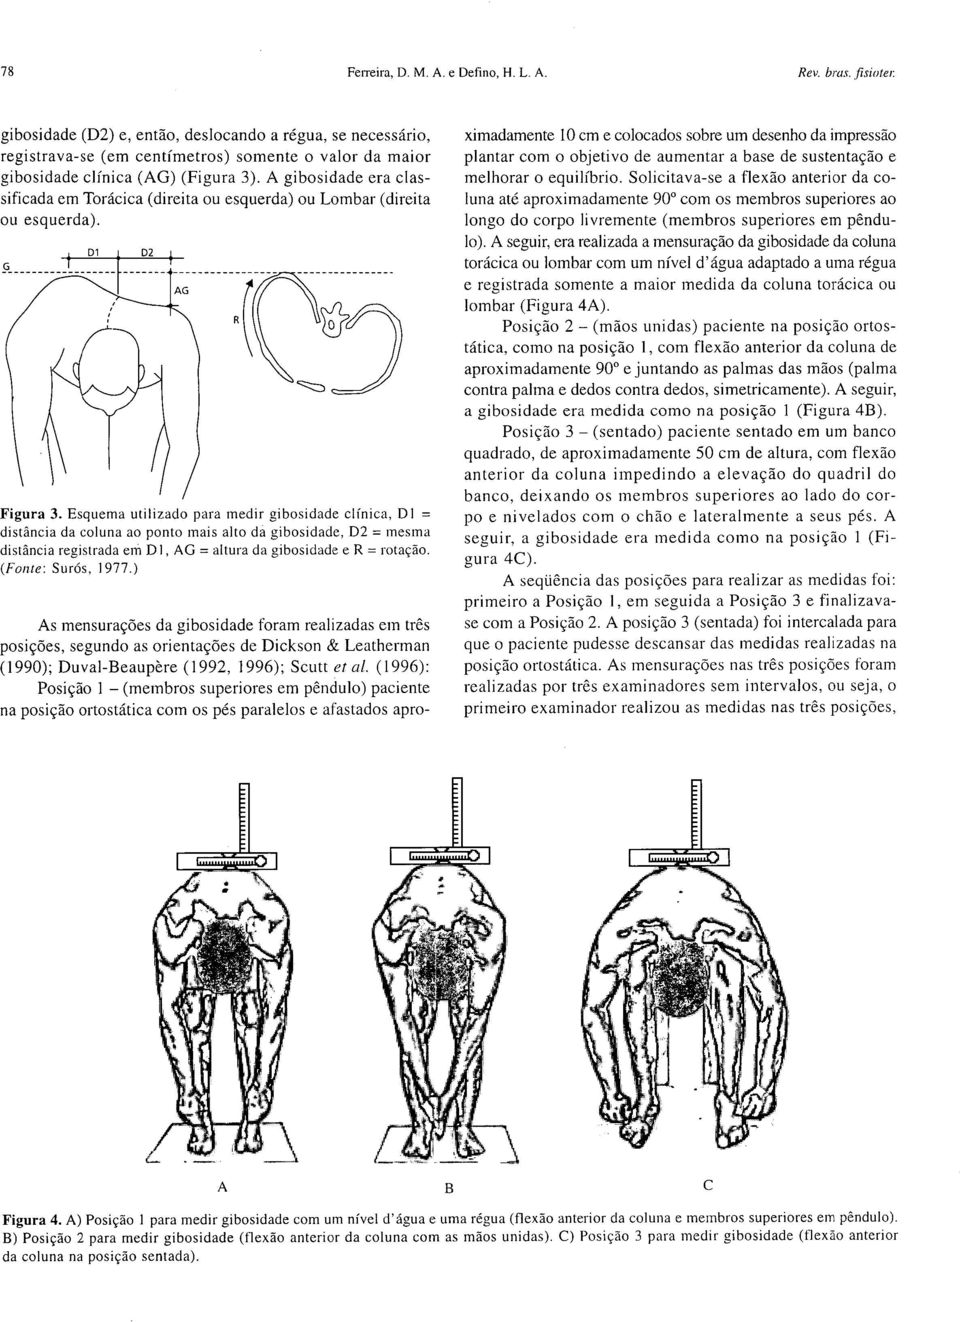 A gibosidade era classificada em Torácica (direita ou esquerda) ou Lombar (direita ou esquerda). Figura 3.